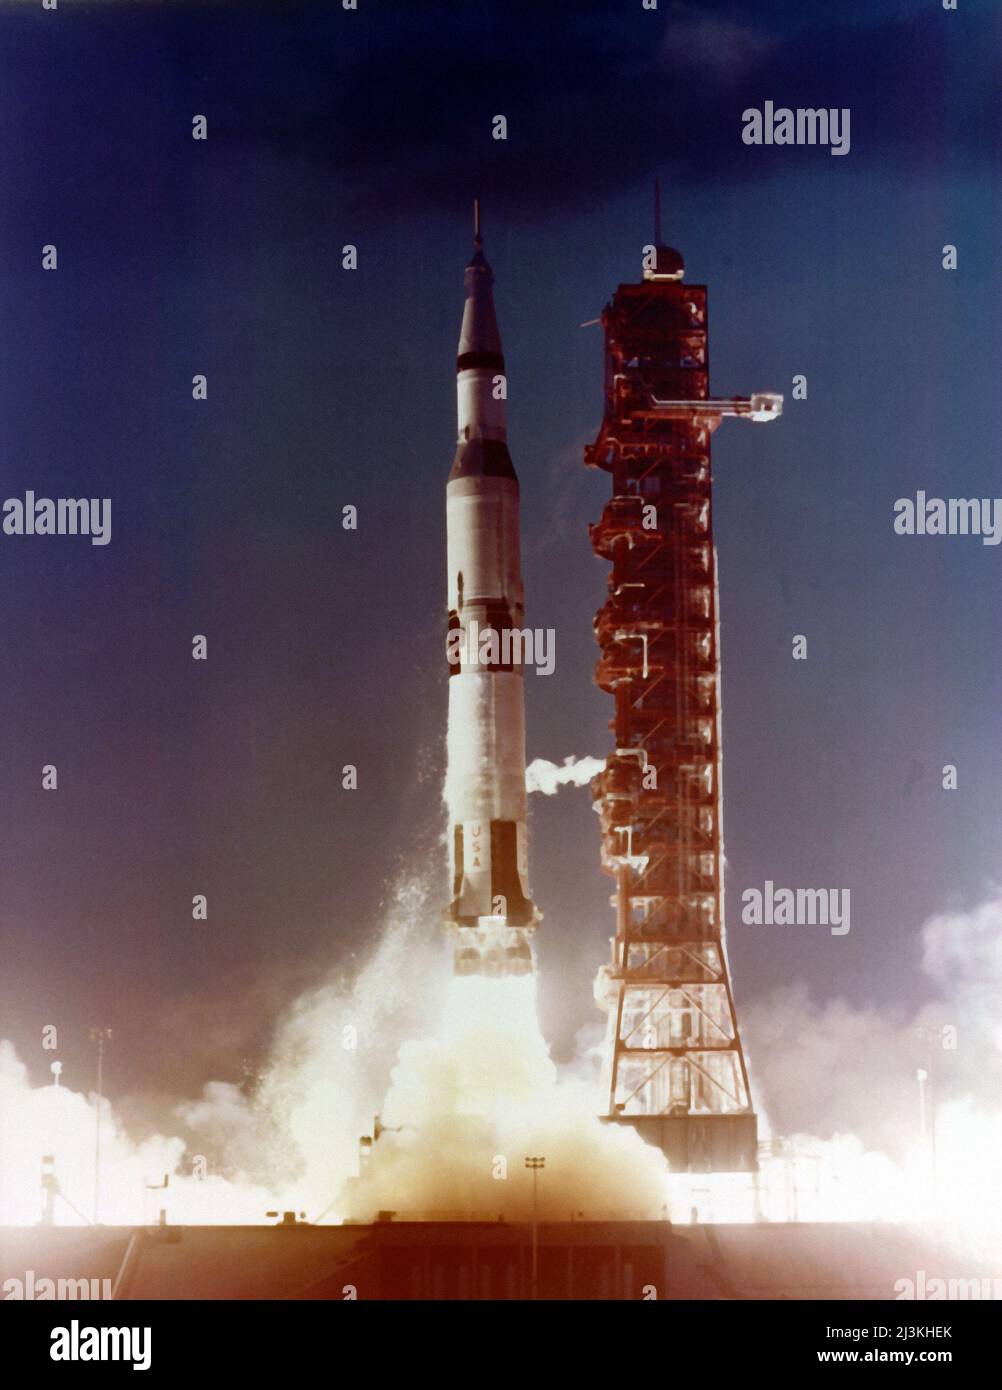 Le 9 novembre 1967, Apollo 4, le premier vol d'essai de l'Apollo/Saturn V, véhicule spatial a été lancé du Centre Spatial Kennedy complexe de lancement 39. C'était un vol d'essai destiné à prouver que la fusée Saturn V complexe pourrait effectuer ses exigences. Les trois étapes séparées avec succès et leurs moteurs comme prévu. La troisième étape également relancé en orbite, qui était une exigence pour les missions lunaires. À la fin du vol, les véhicules Apollo spacecraft réintégré et prouvé qu'il pouvait survivre à l'intense chaleur générée lors d'un retour à grande vitesse de la lune. Banque D'Images